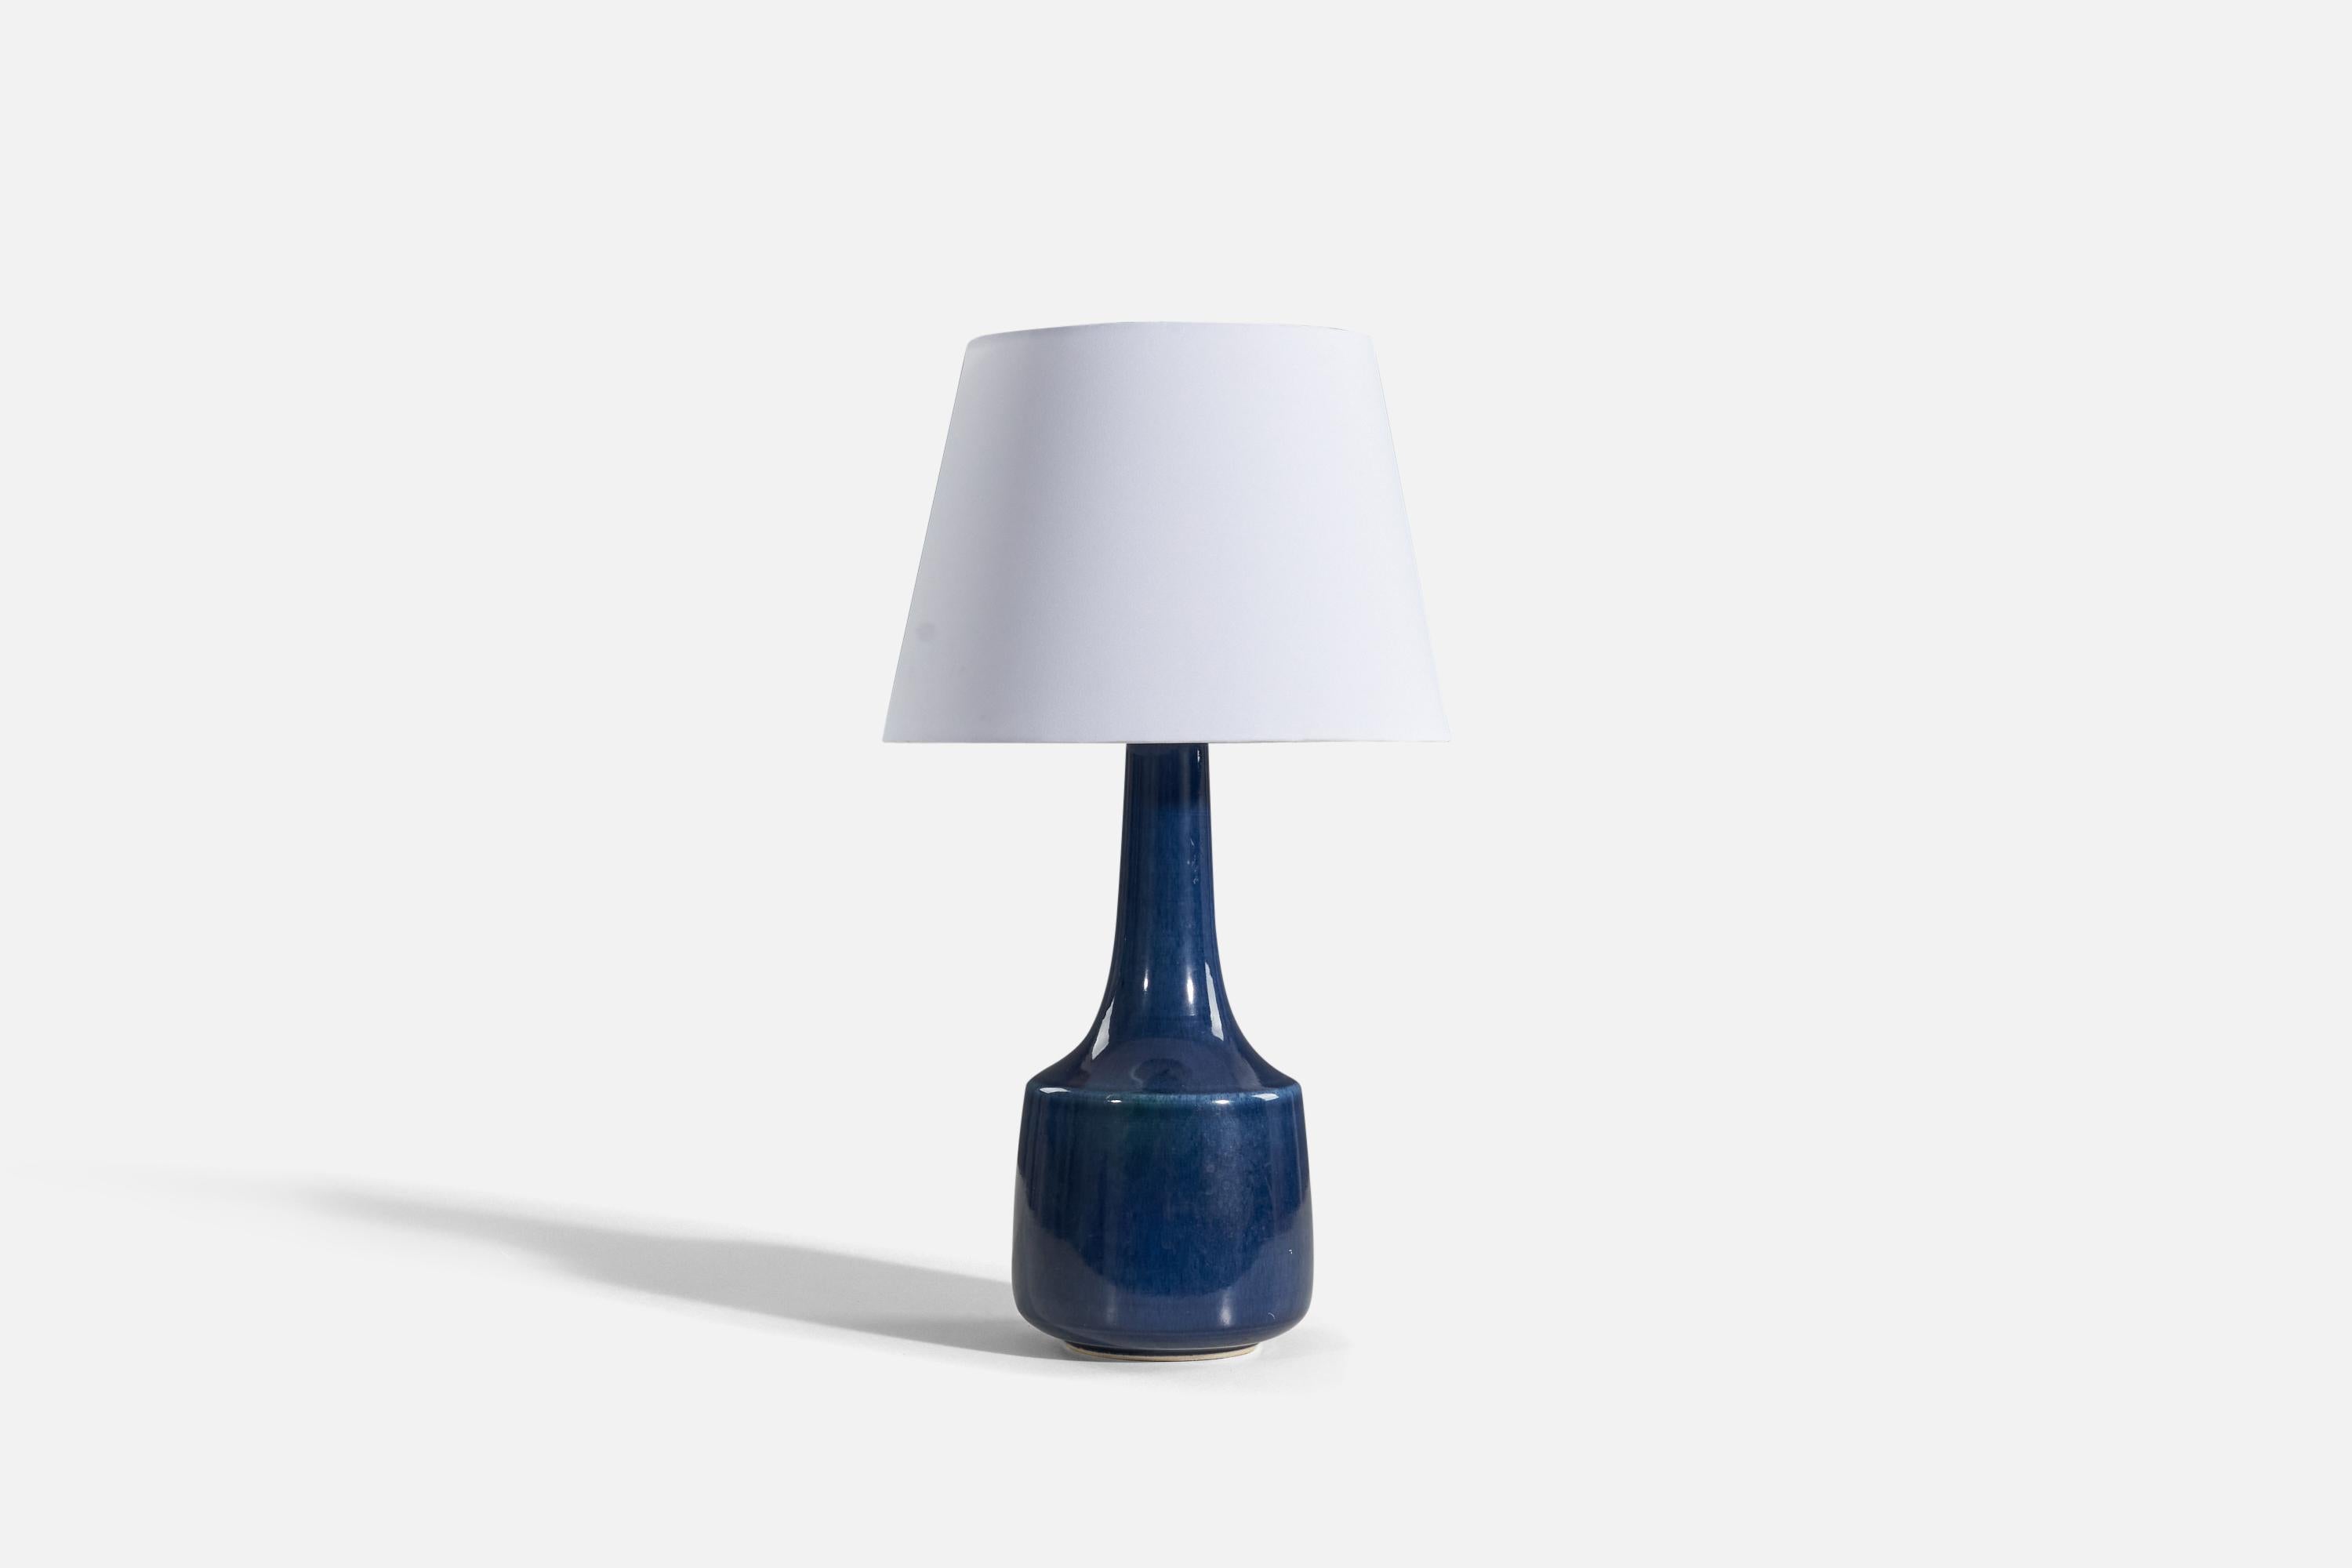 Eine Tischlampe aus blauer Keramik und Messing, entworfen und hergestellt von Lotte und Gunnar Bostrom, Kanada, 1960er Jahre.

Verkauft ohne Lampenschirm. 

Abmessungen der Lampe (Zoll): 21,375 x 7 x 7 (H x B x T).
Abmessungen des Schattens